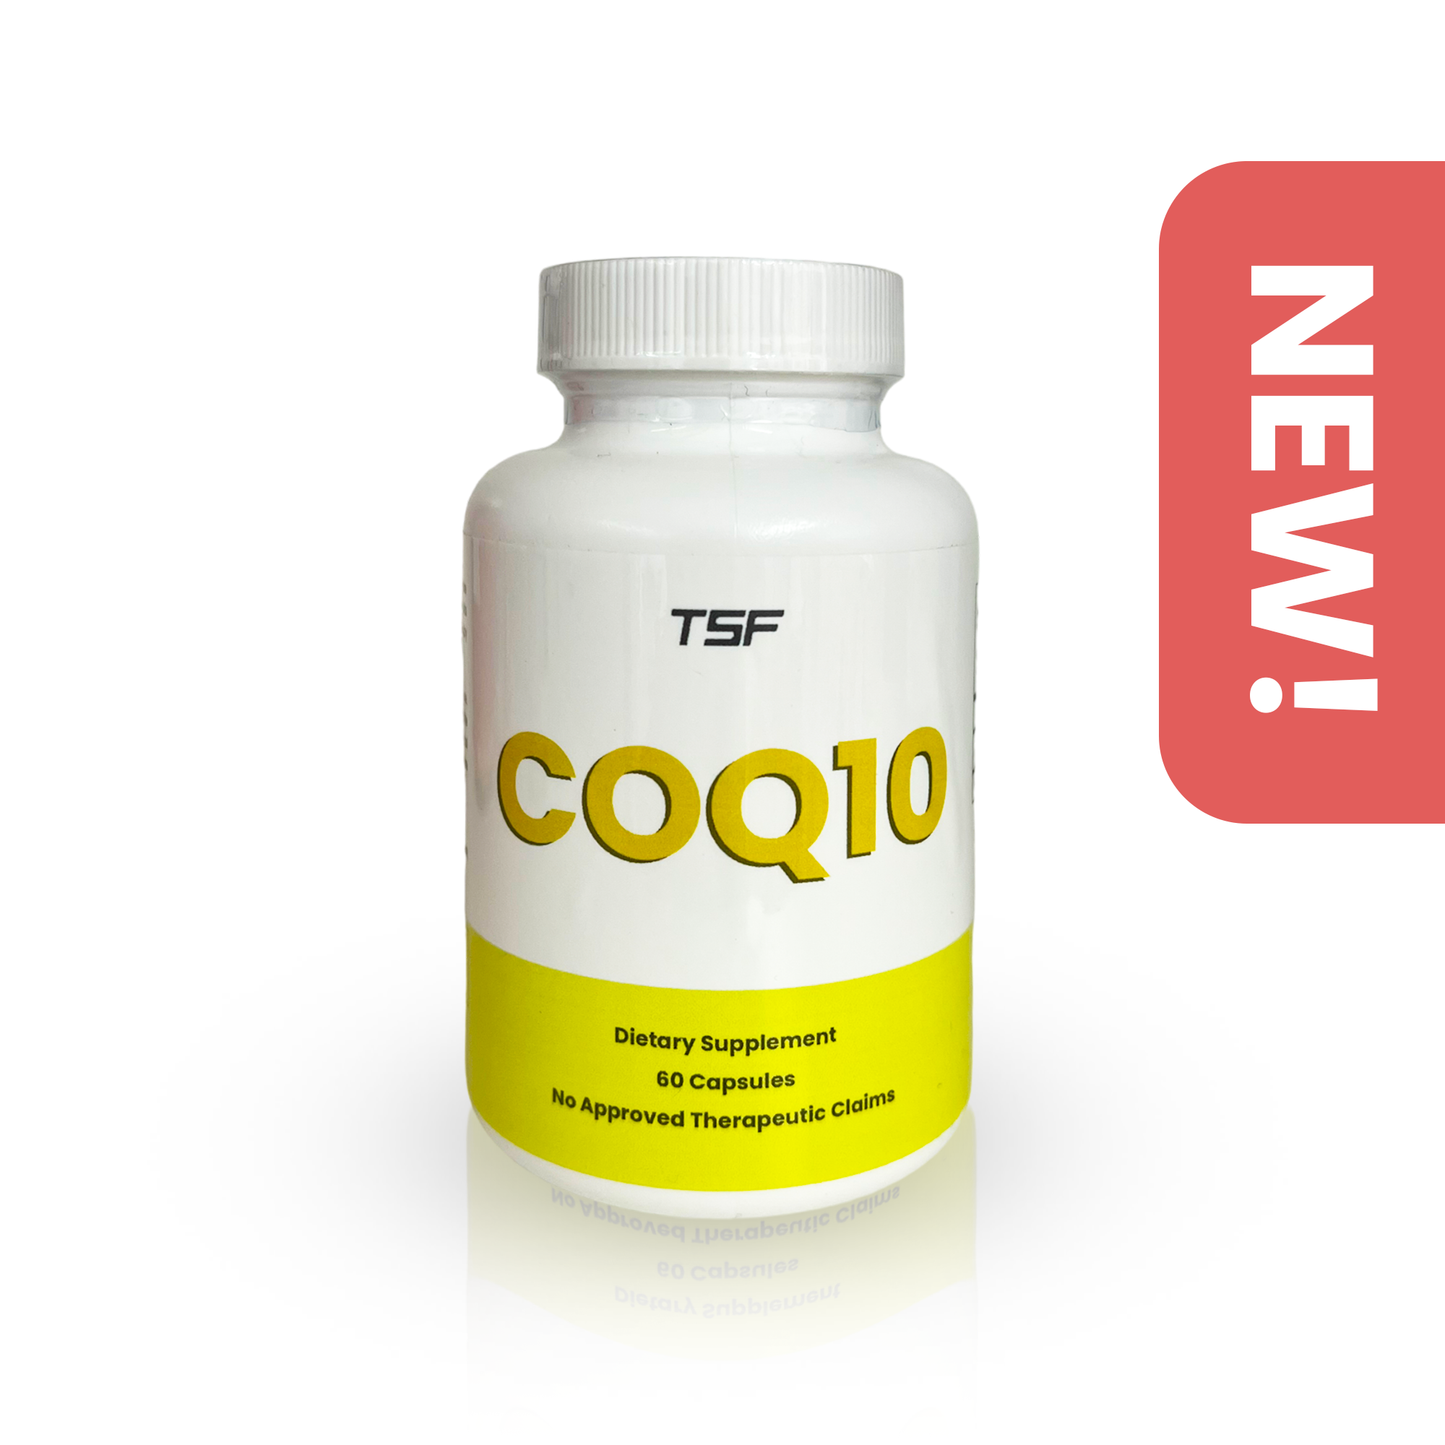 NEW! COQ10